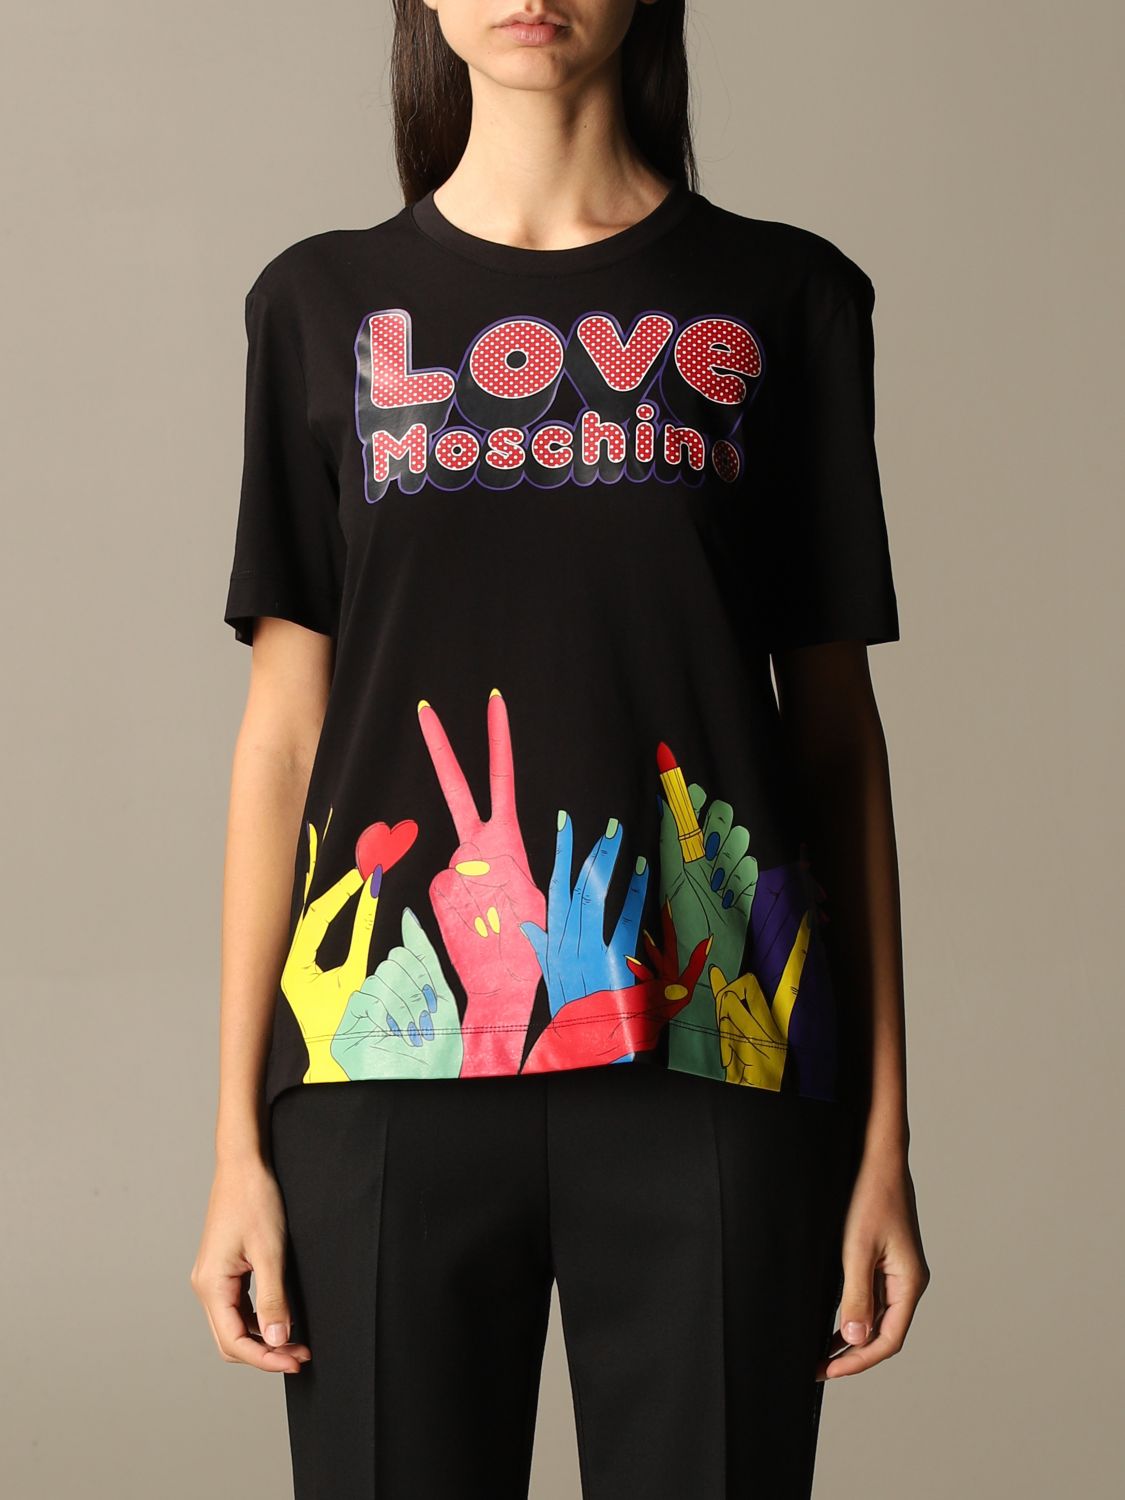 moschino t shirt love